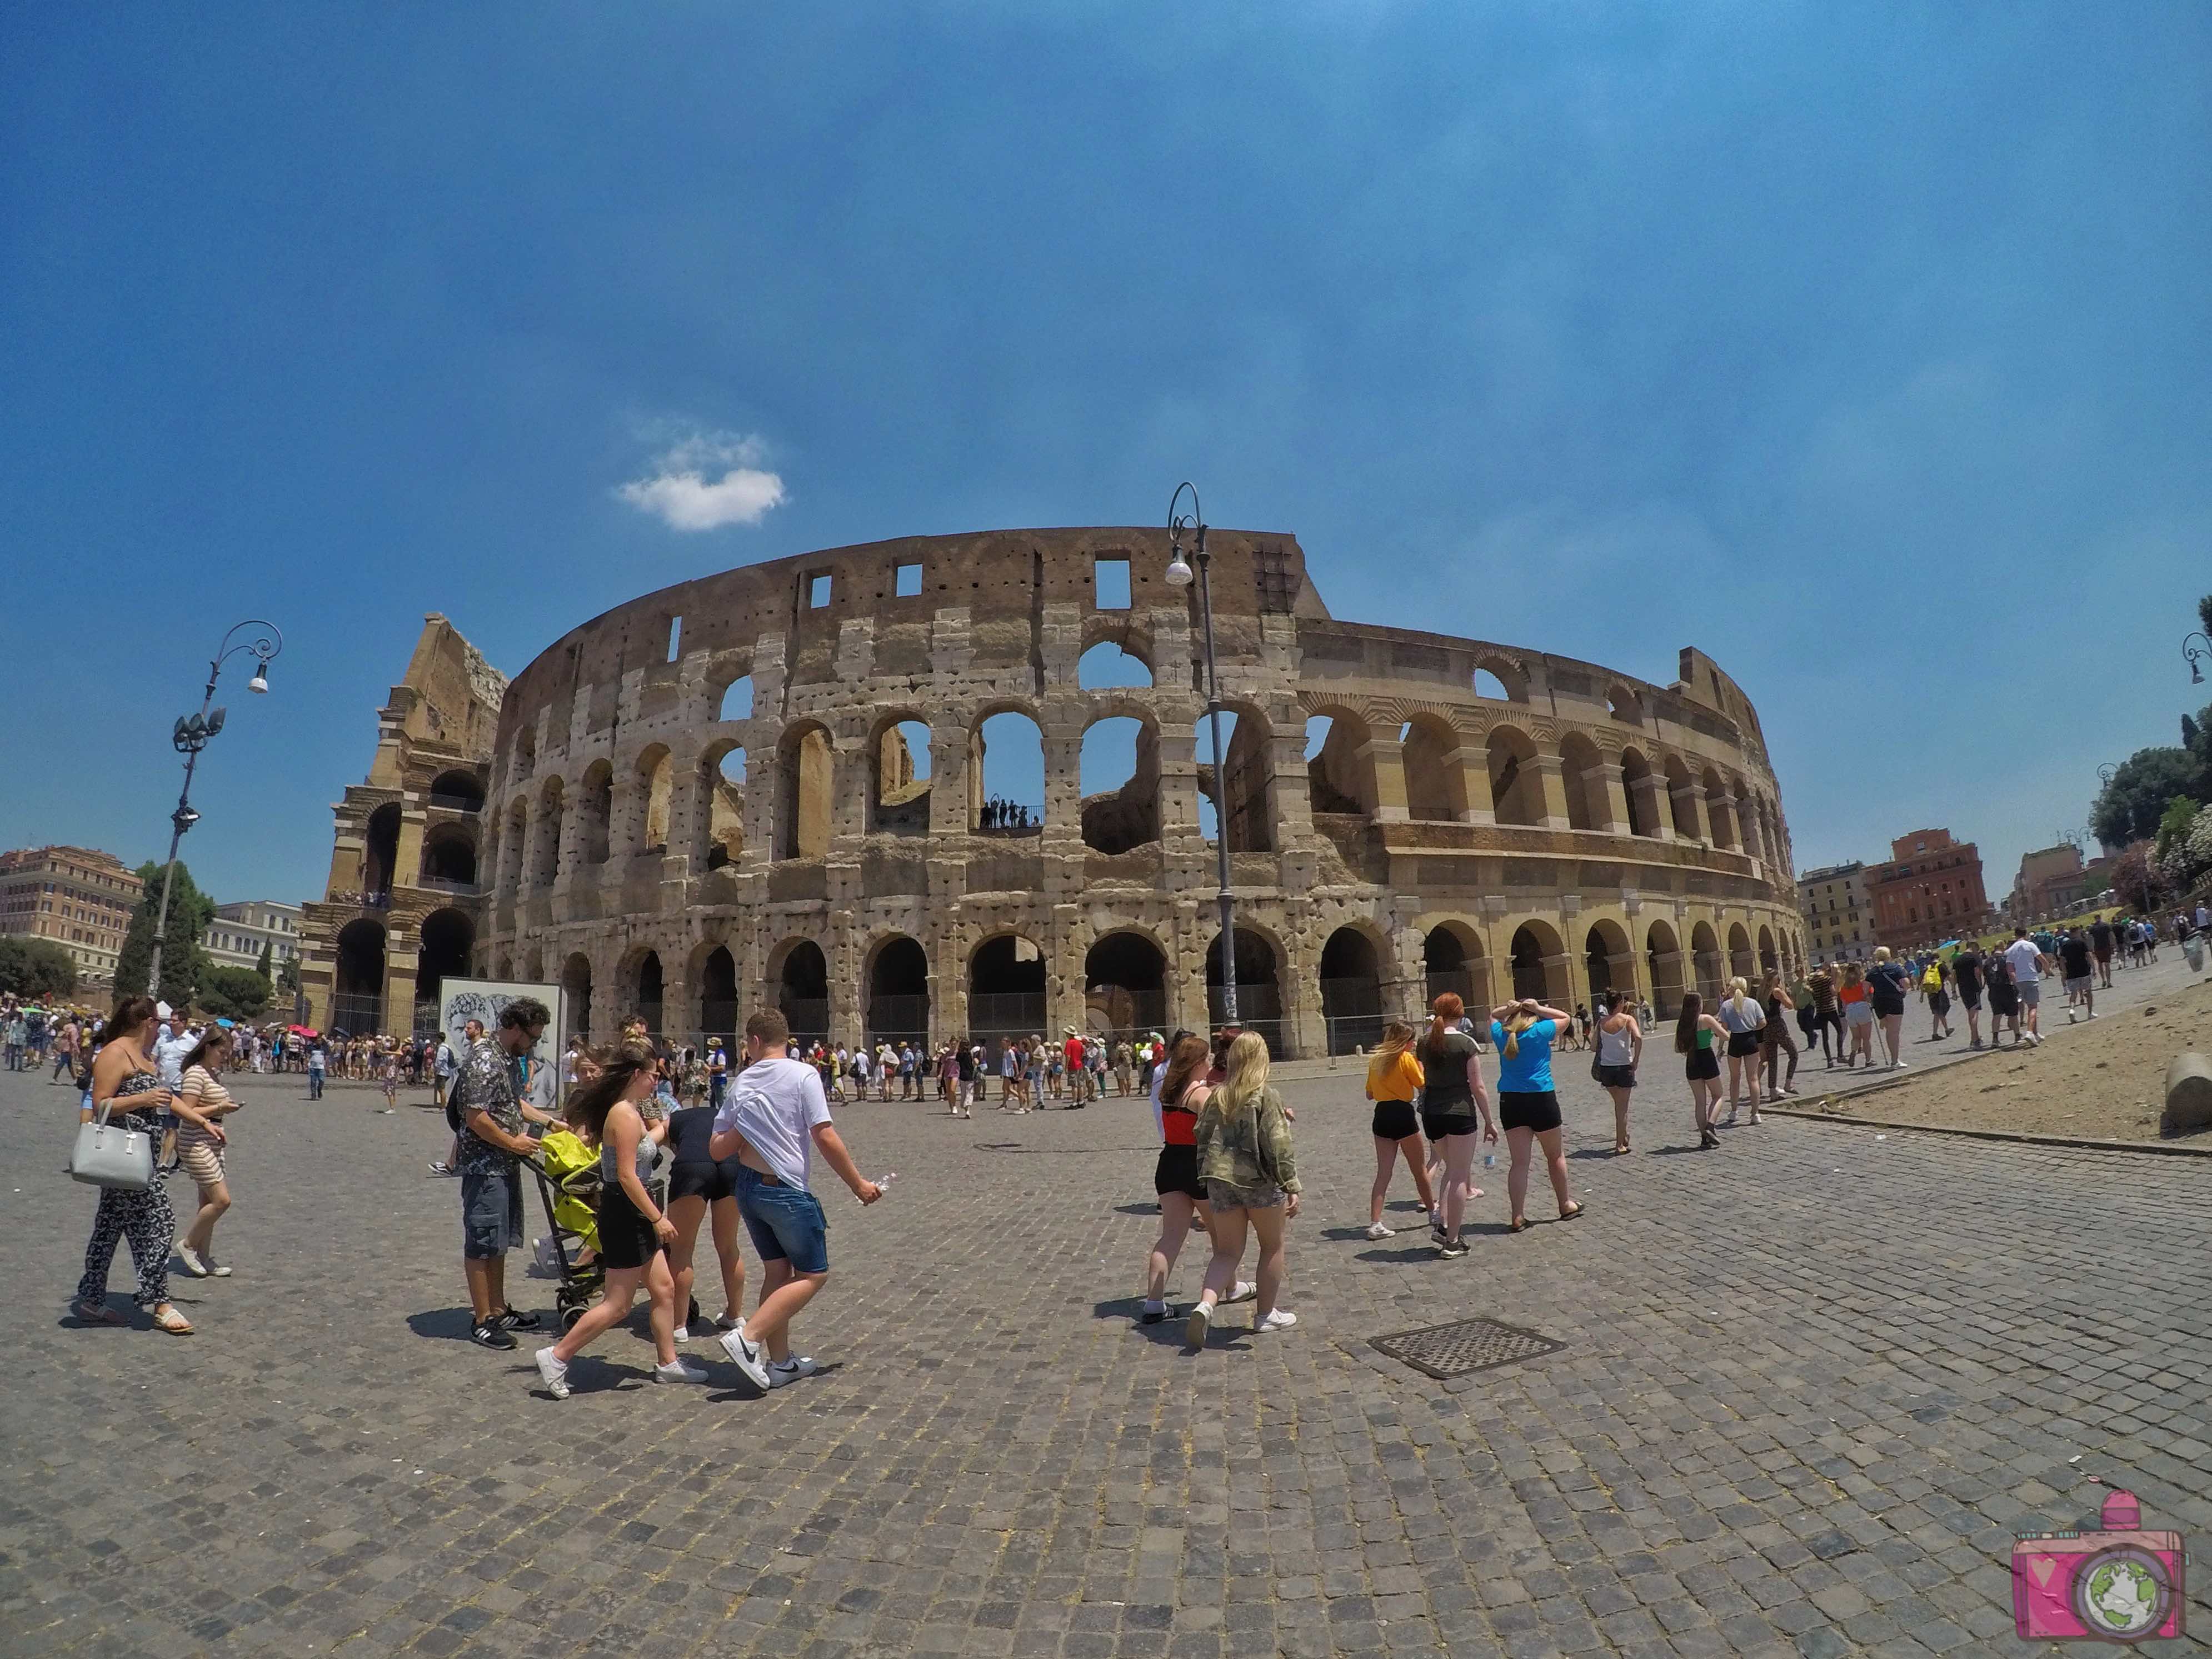 Cosa vedere a Roma Colosseo